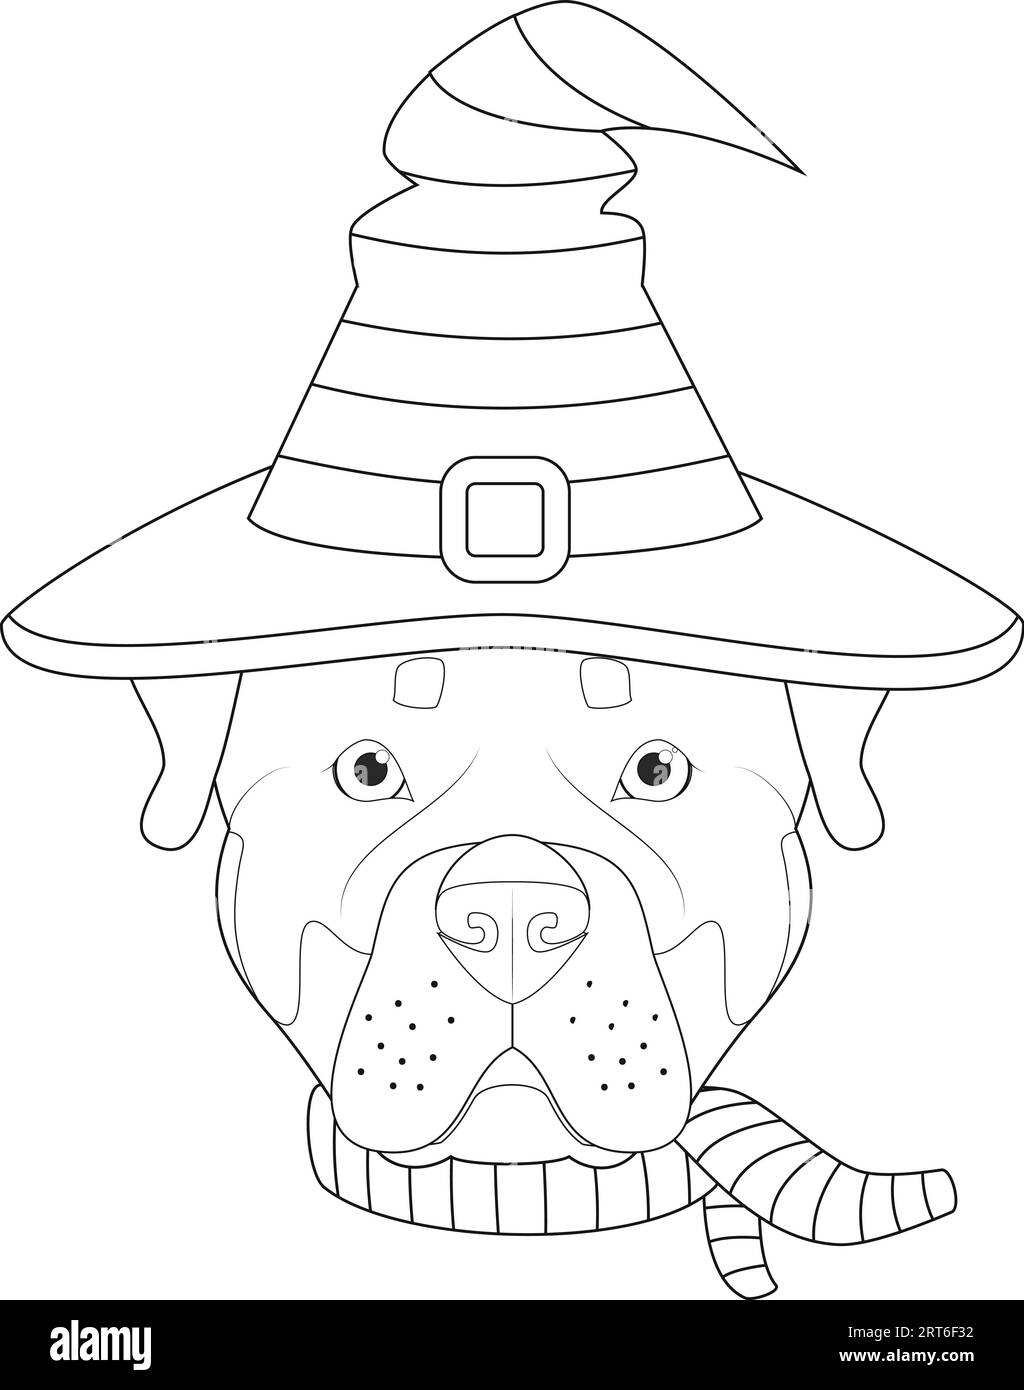 Biglietto d'auguri di Halloween da colorare. Cane Rottweiler vestito da strega con cappello e sciarpa neri e viola Illustrazione Vettoriale